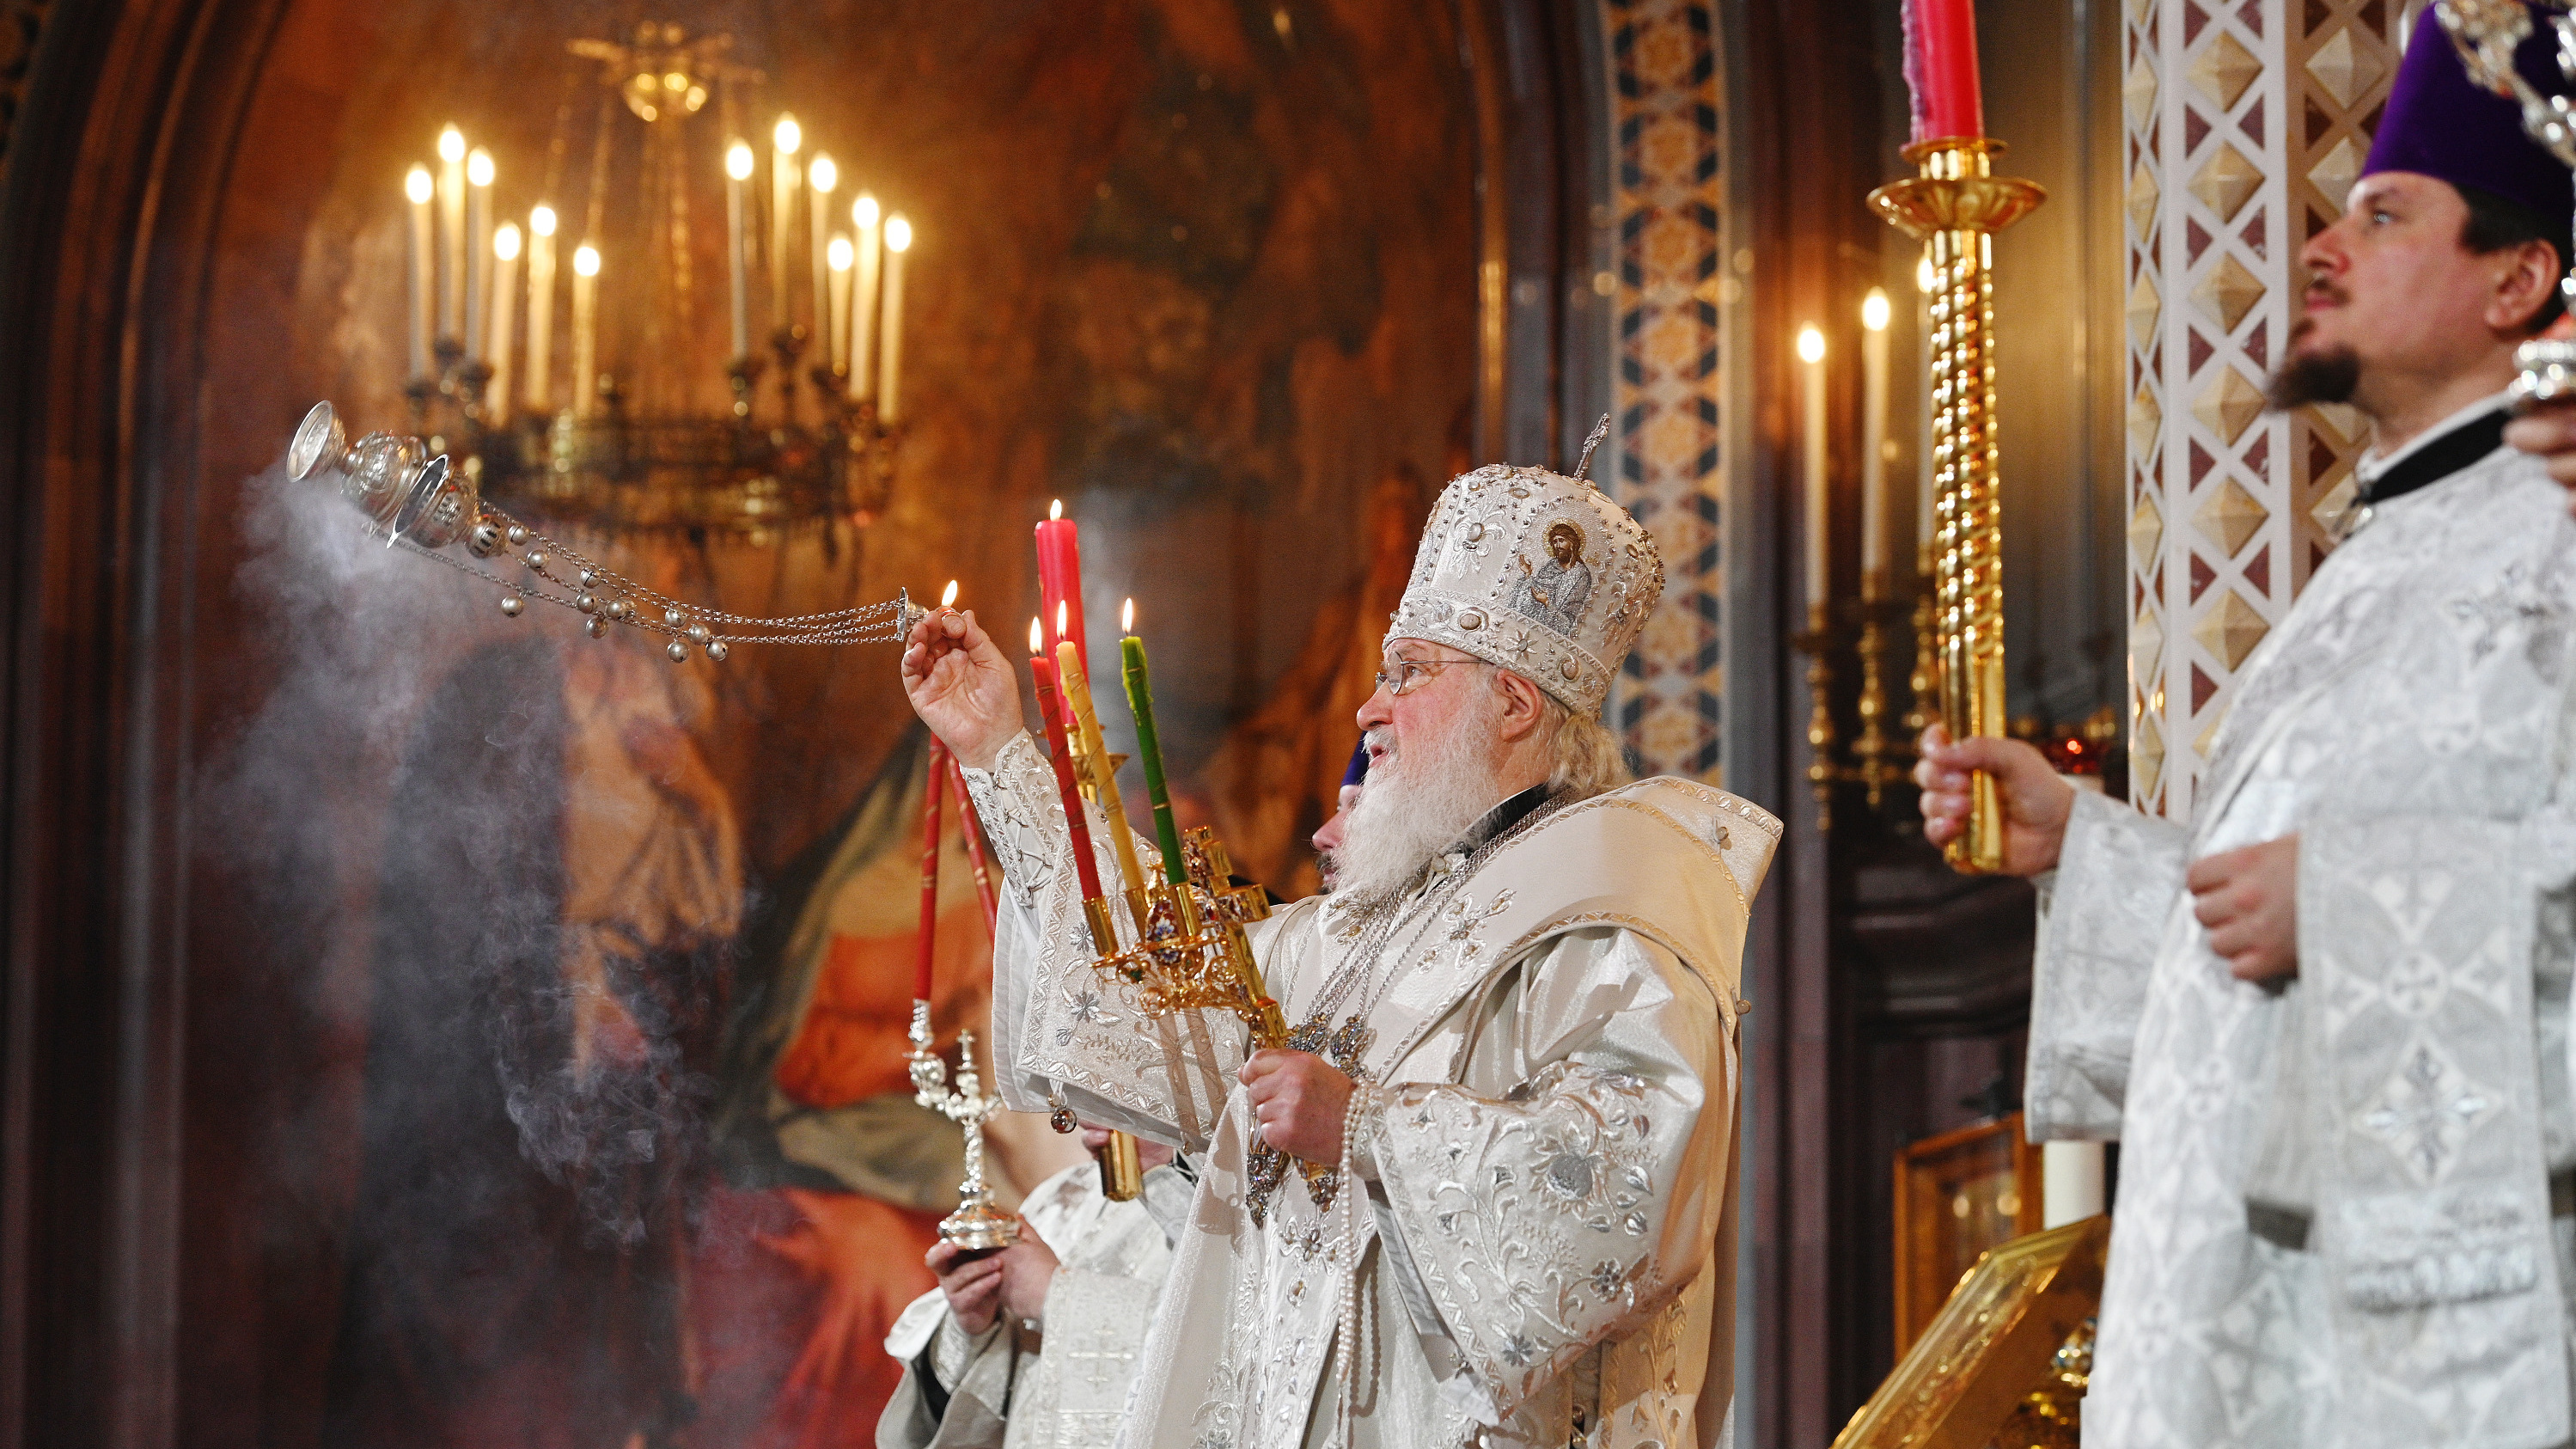 Патриарх Кирилл пригрозил церковным судом священникам, которые нарушат карантин